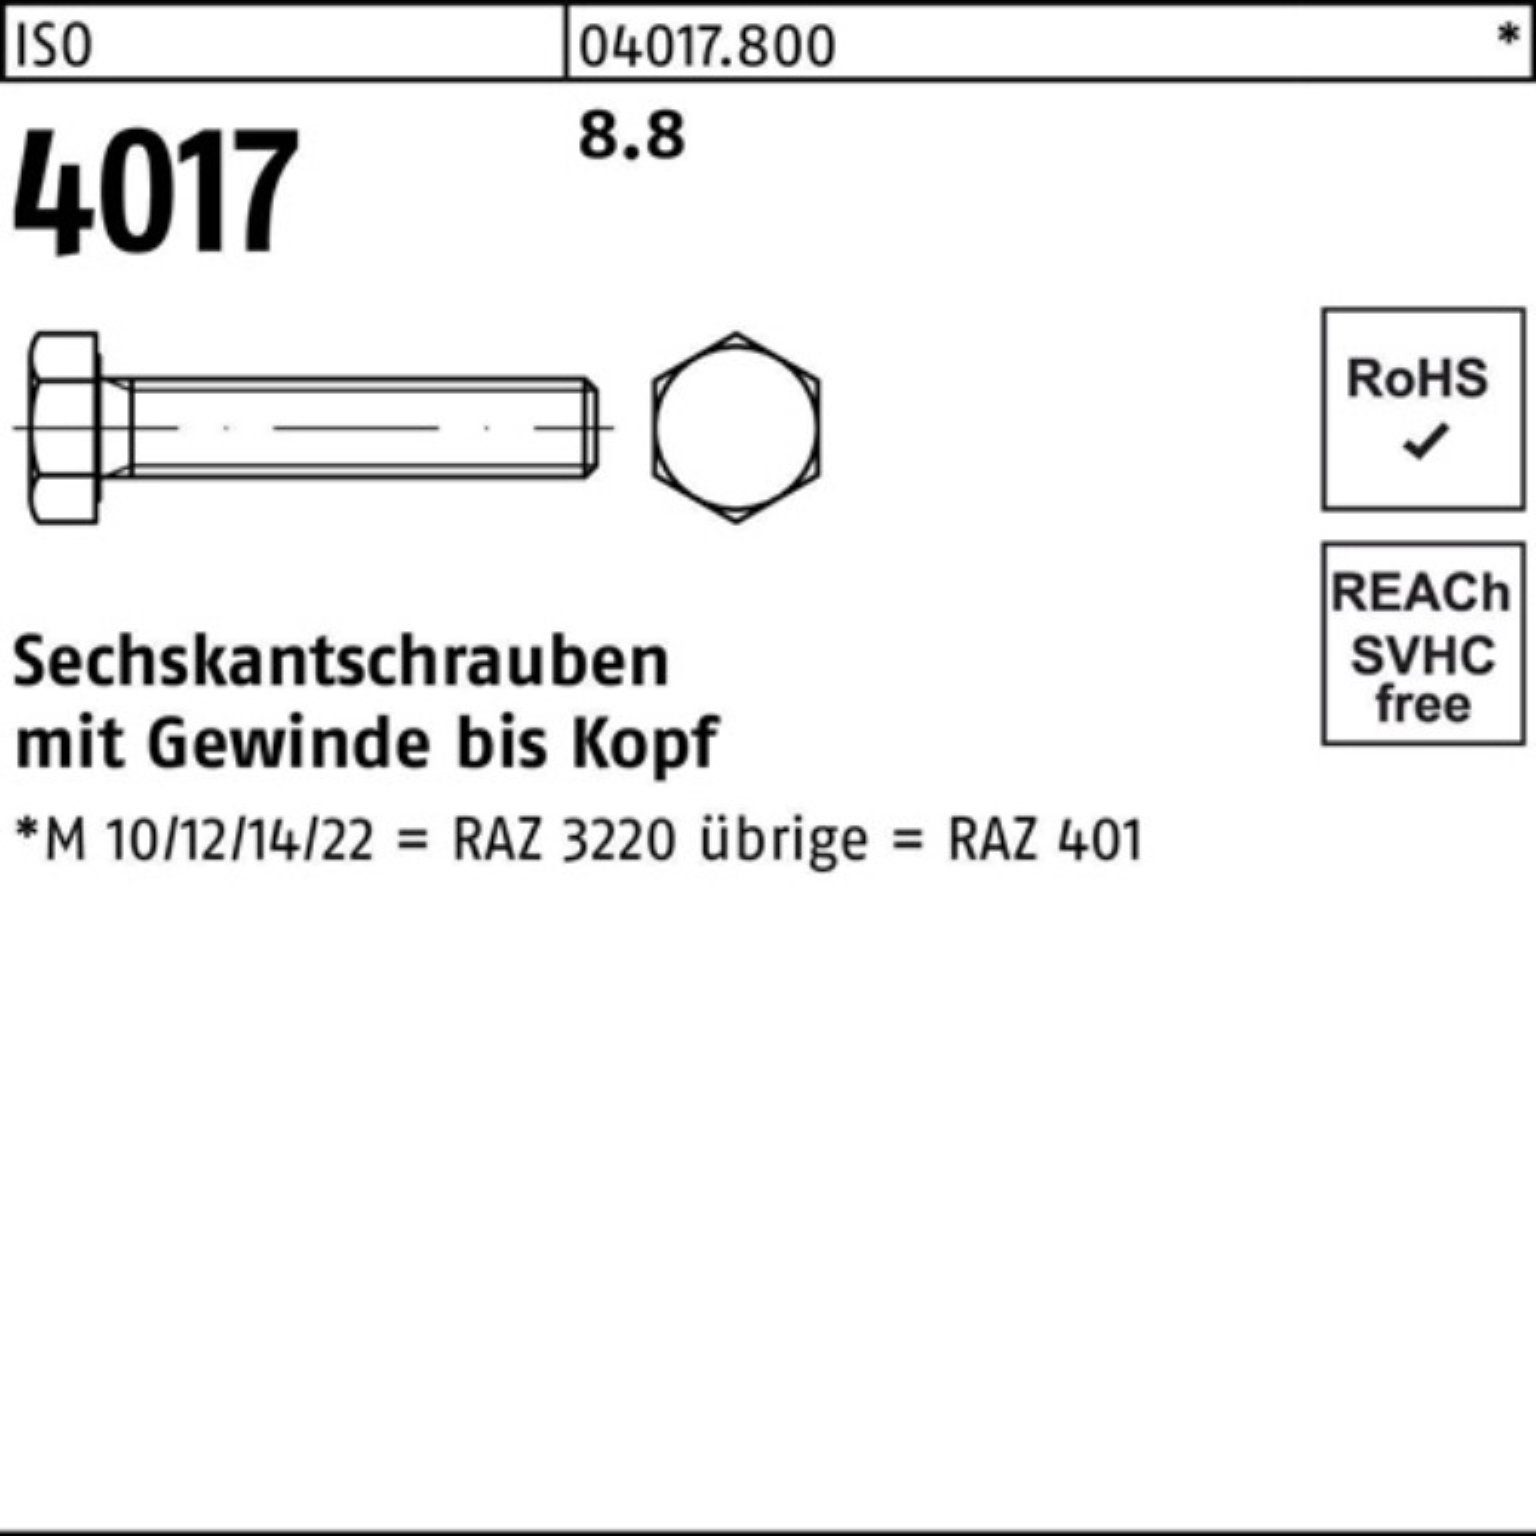 ISO Sechskantschraube 4017 401 M45x Sechskantschraube 100er 100 VG Bufab Pack 8.8 1 ISO Stück